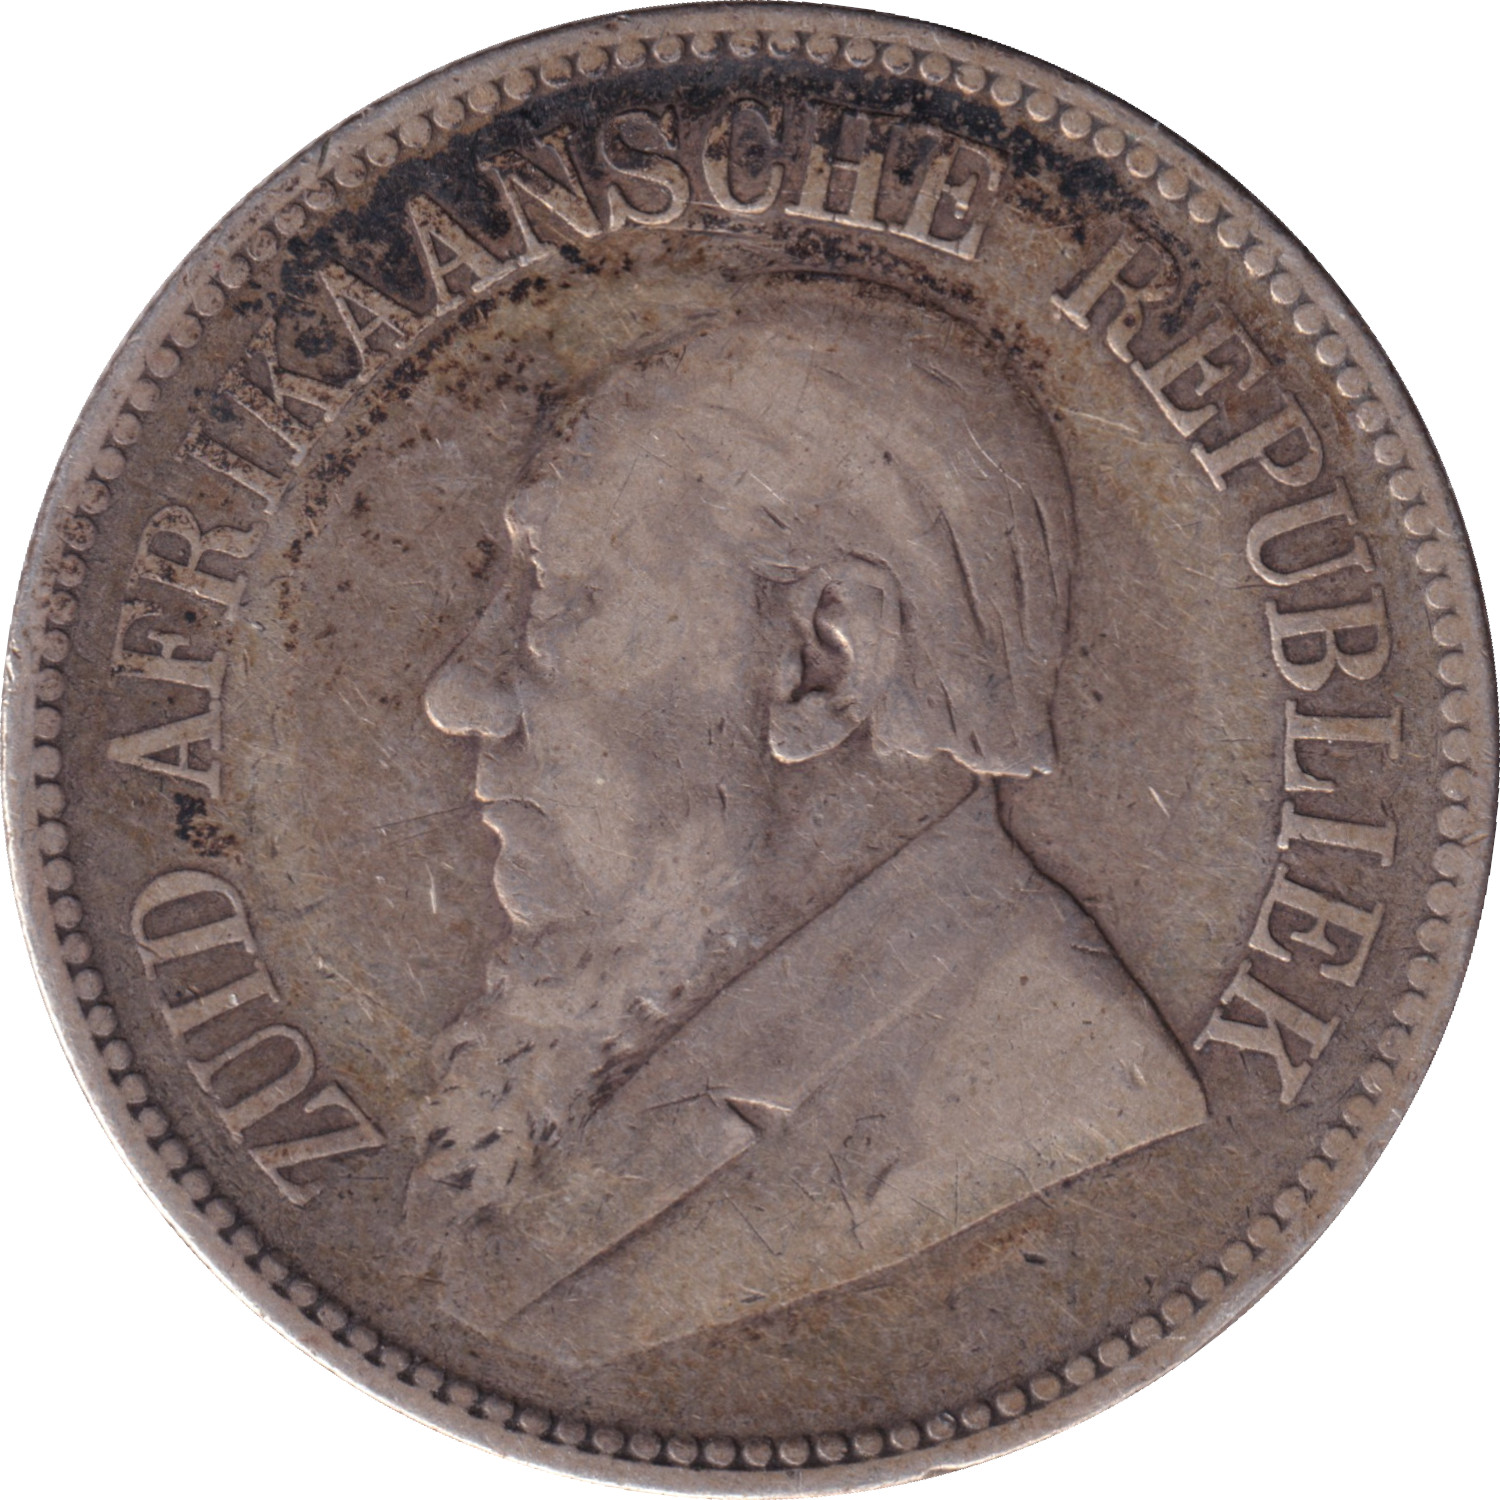 2 1/2 shillings - Krugger